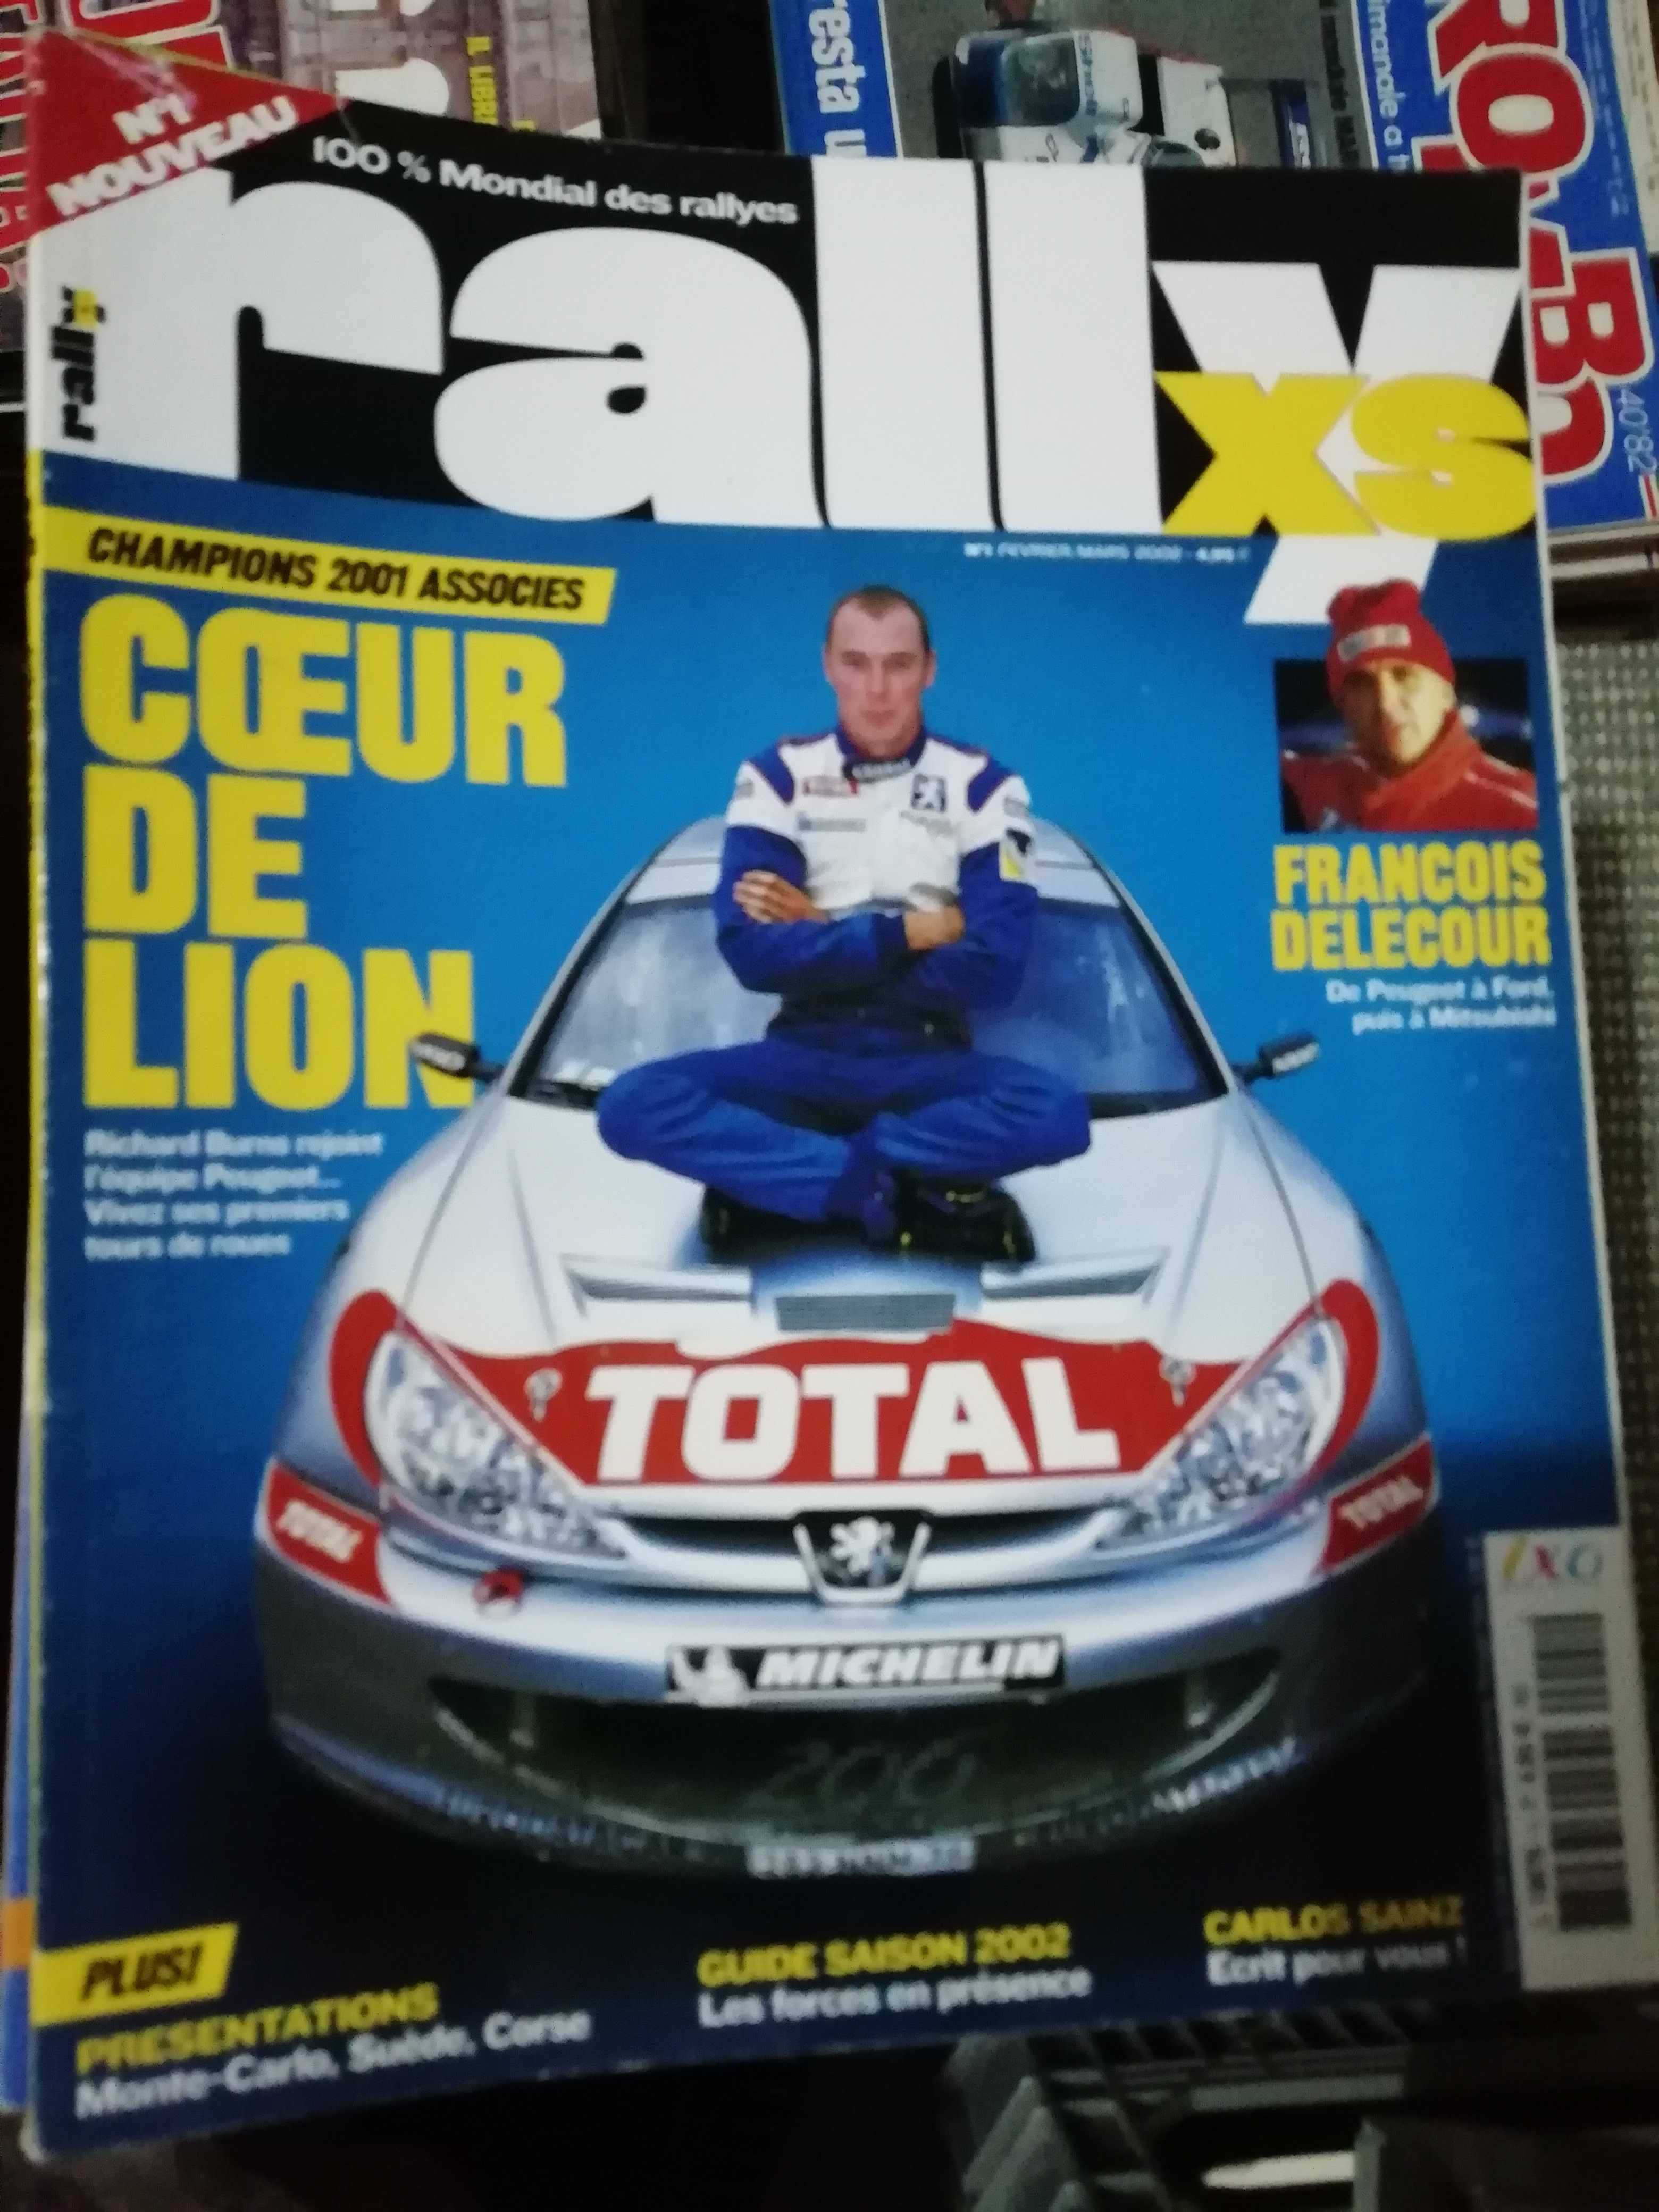 Revistas RallyXS e Portugal Racing